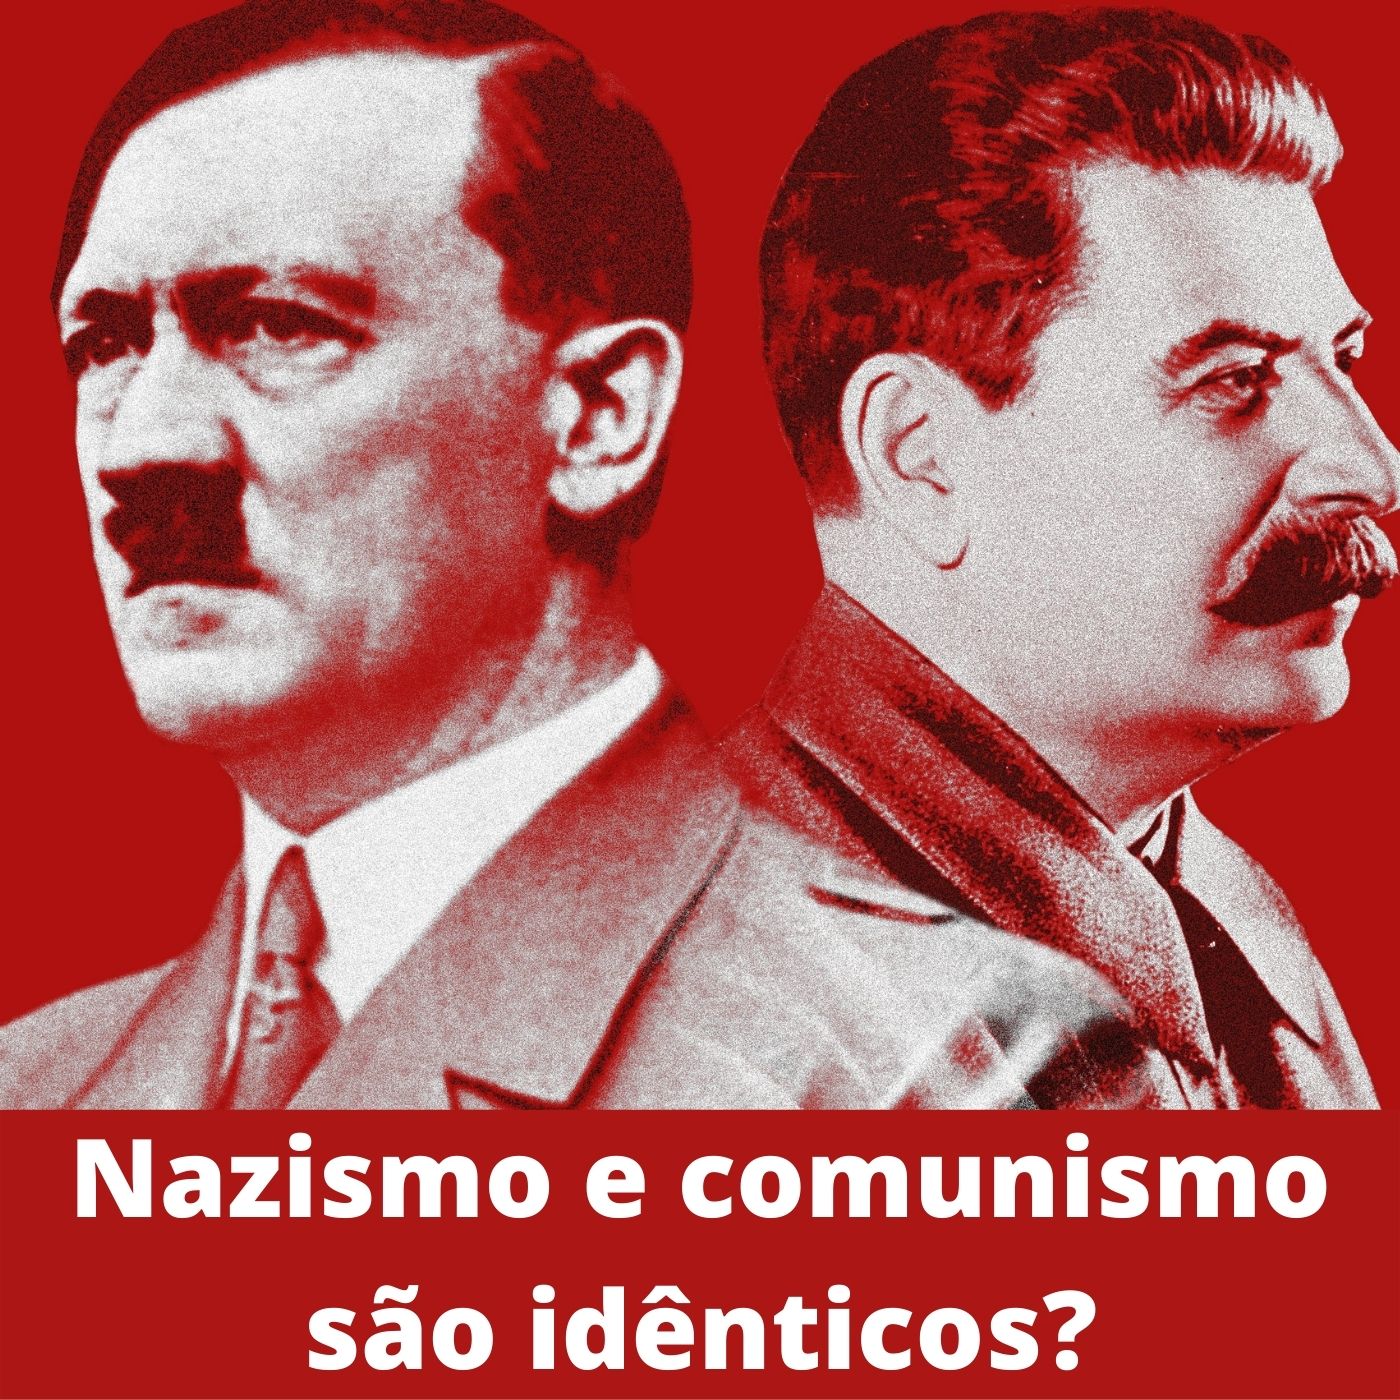 Nazismo e comunismo são iguais?